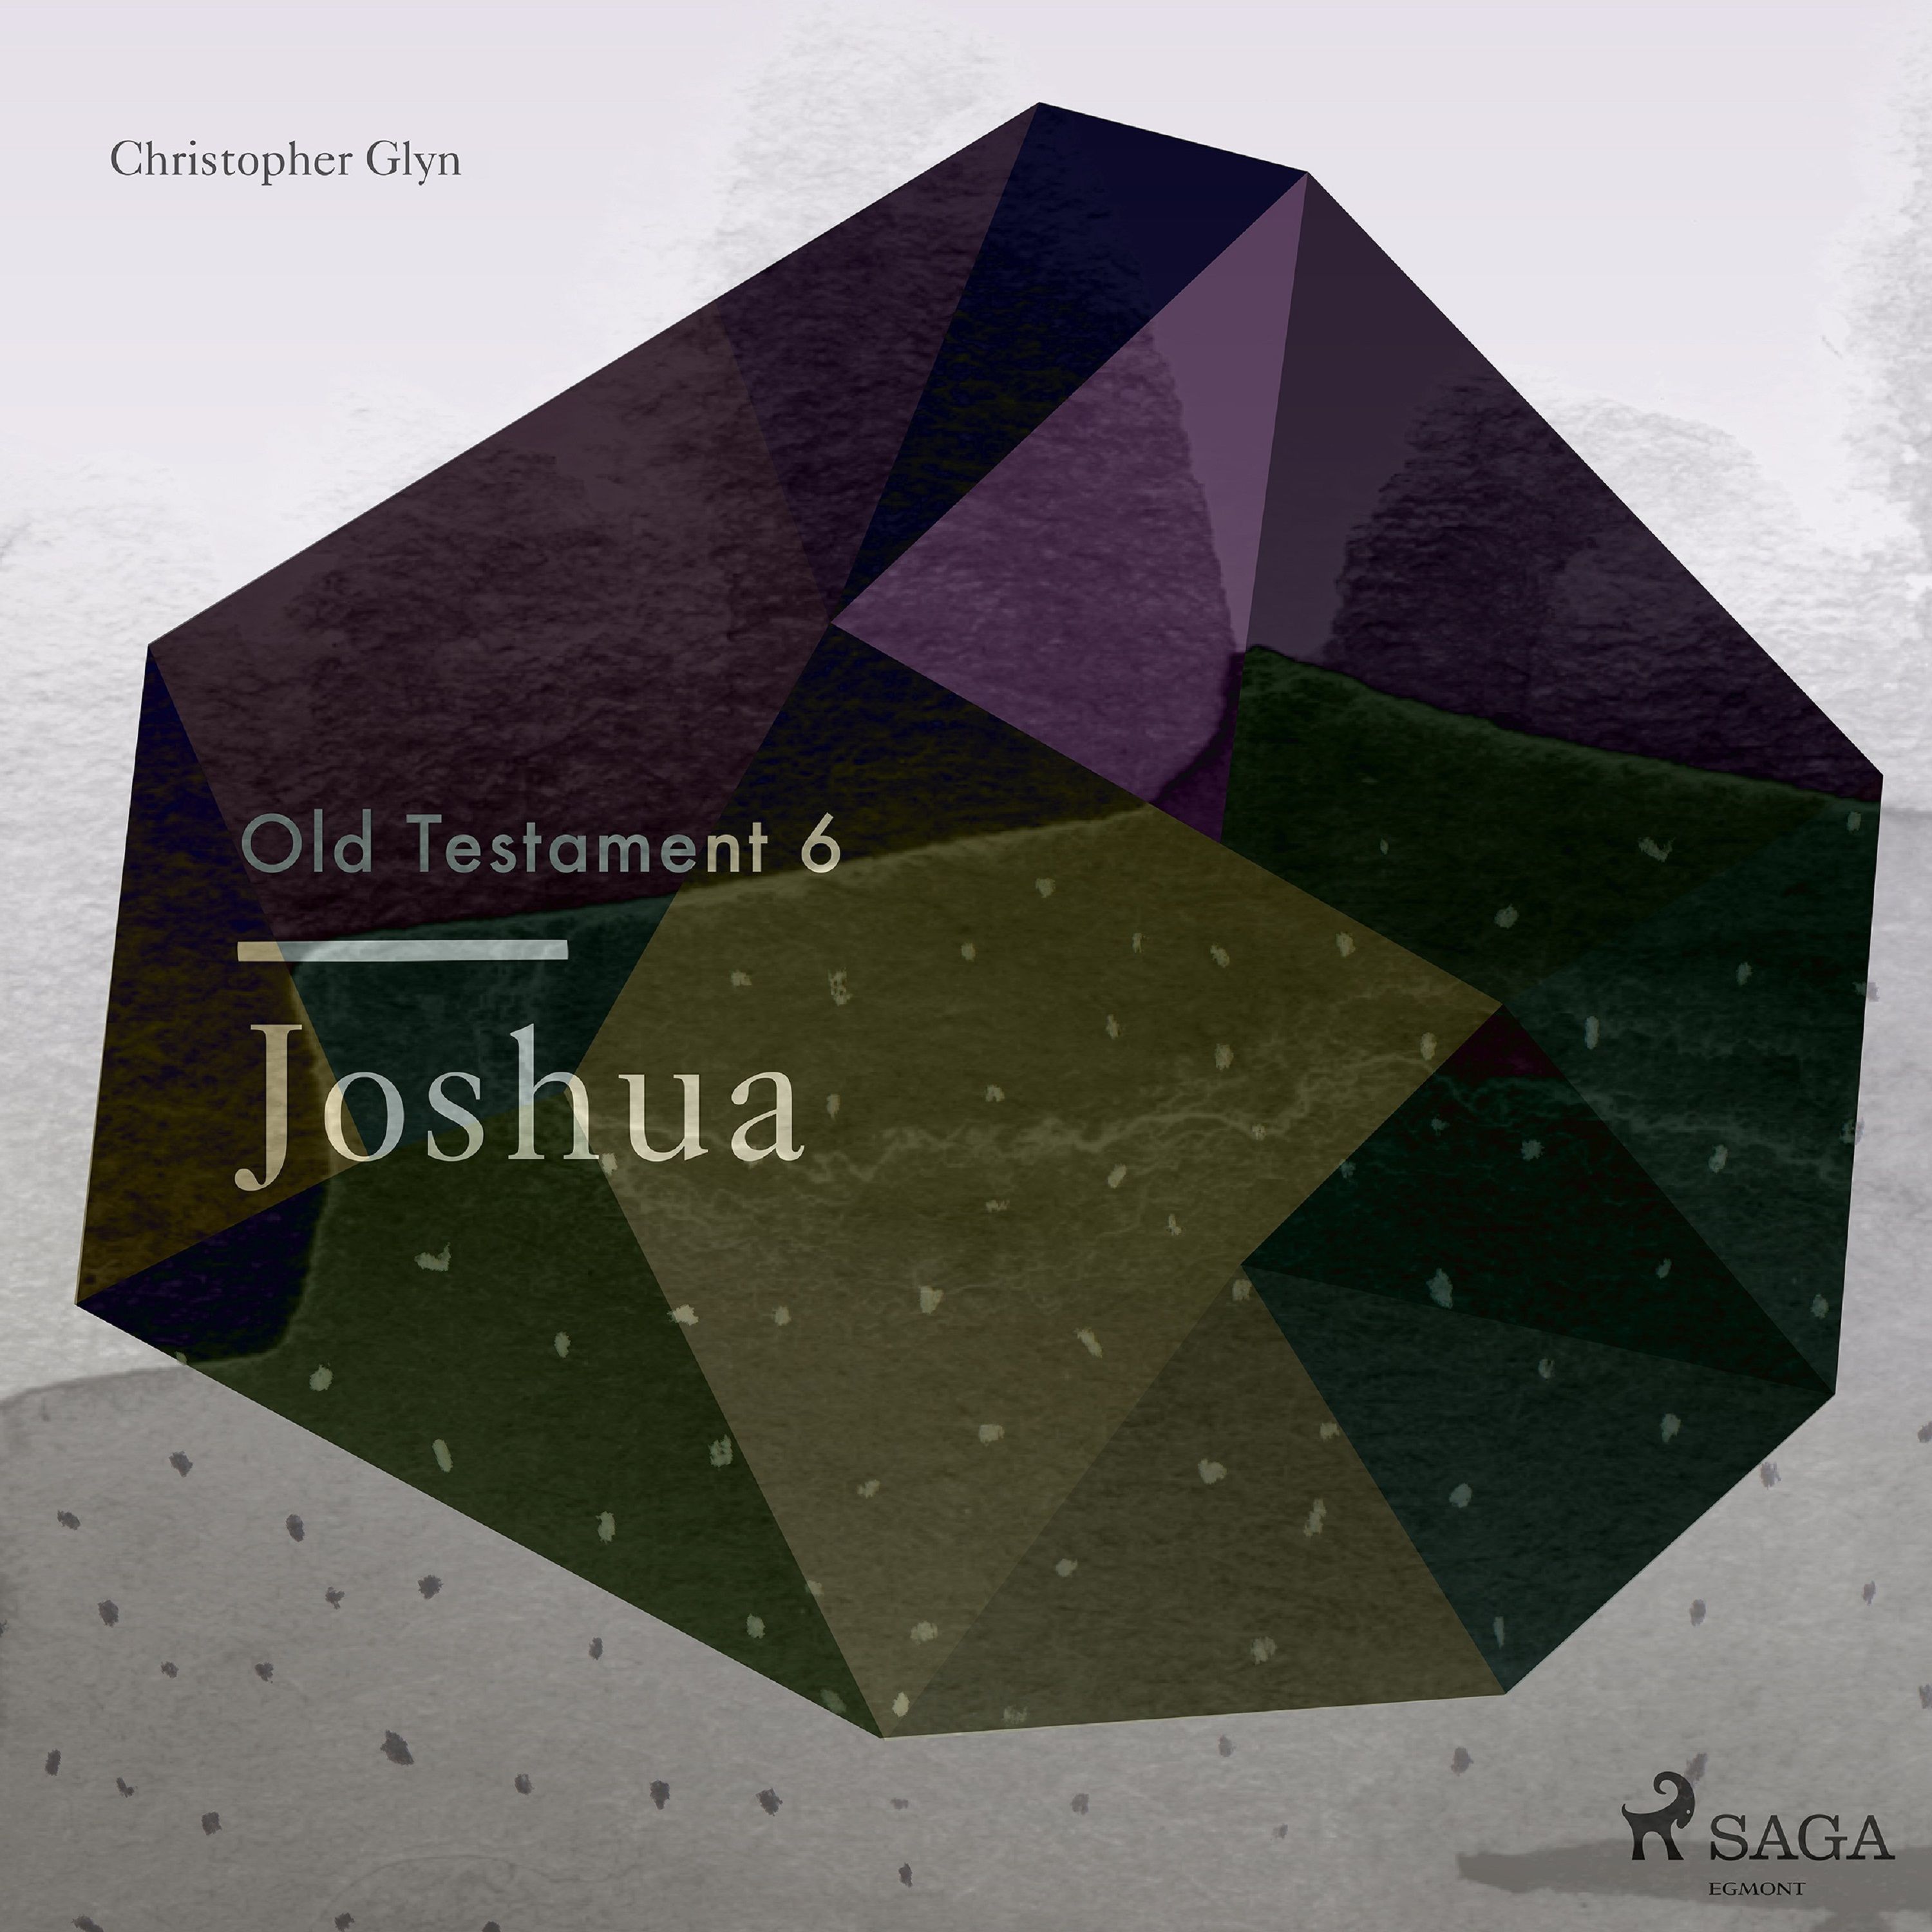 The Old Testament 6 - Joshua, ljudbok av Christopher Glyn